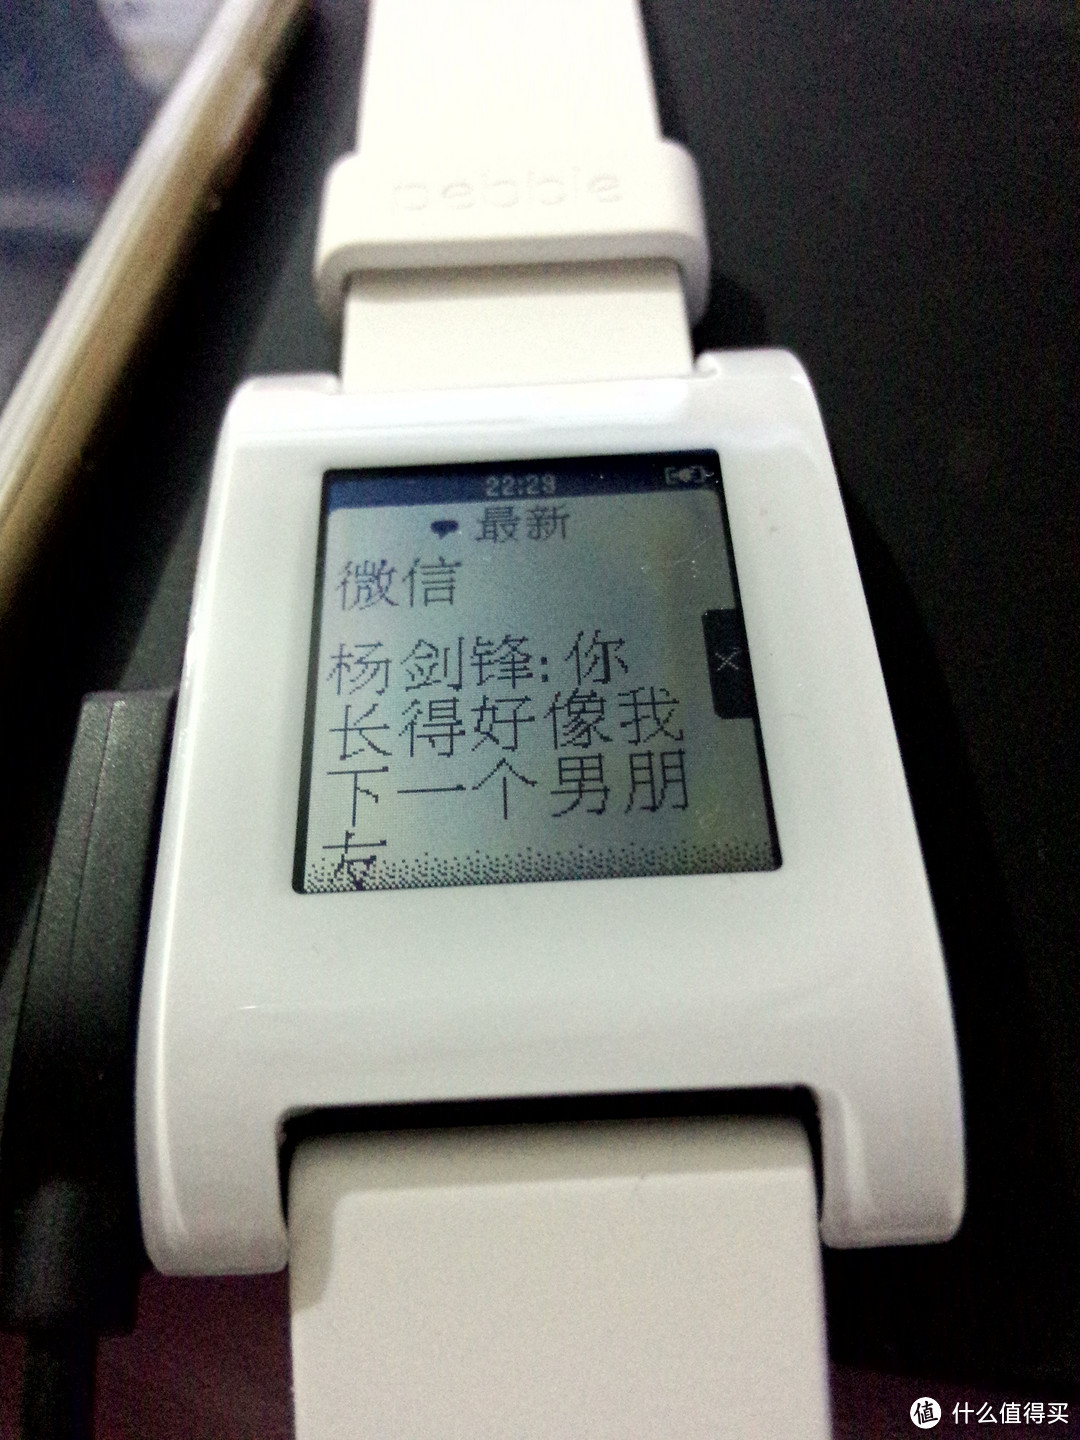 Pebble 智能手表官方更换解决中文固件问题附使用感受